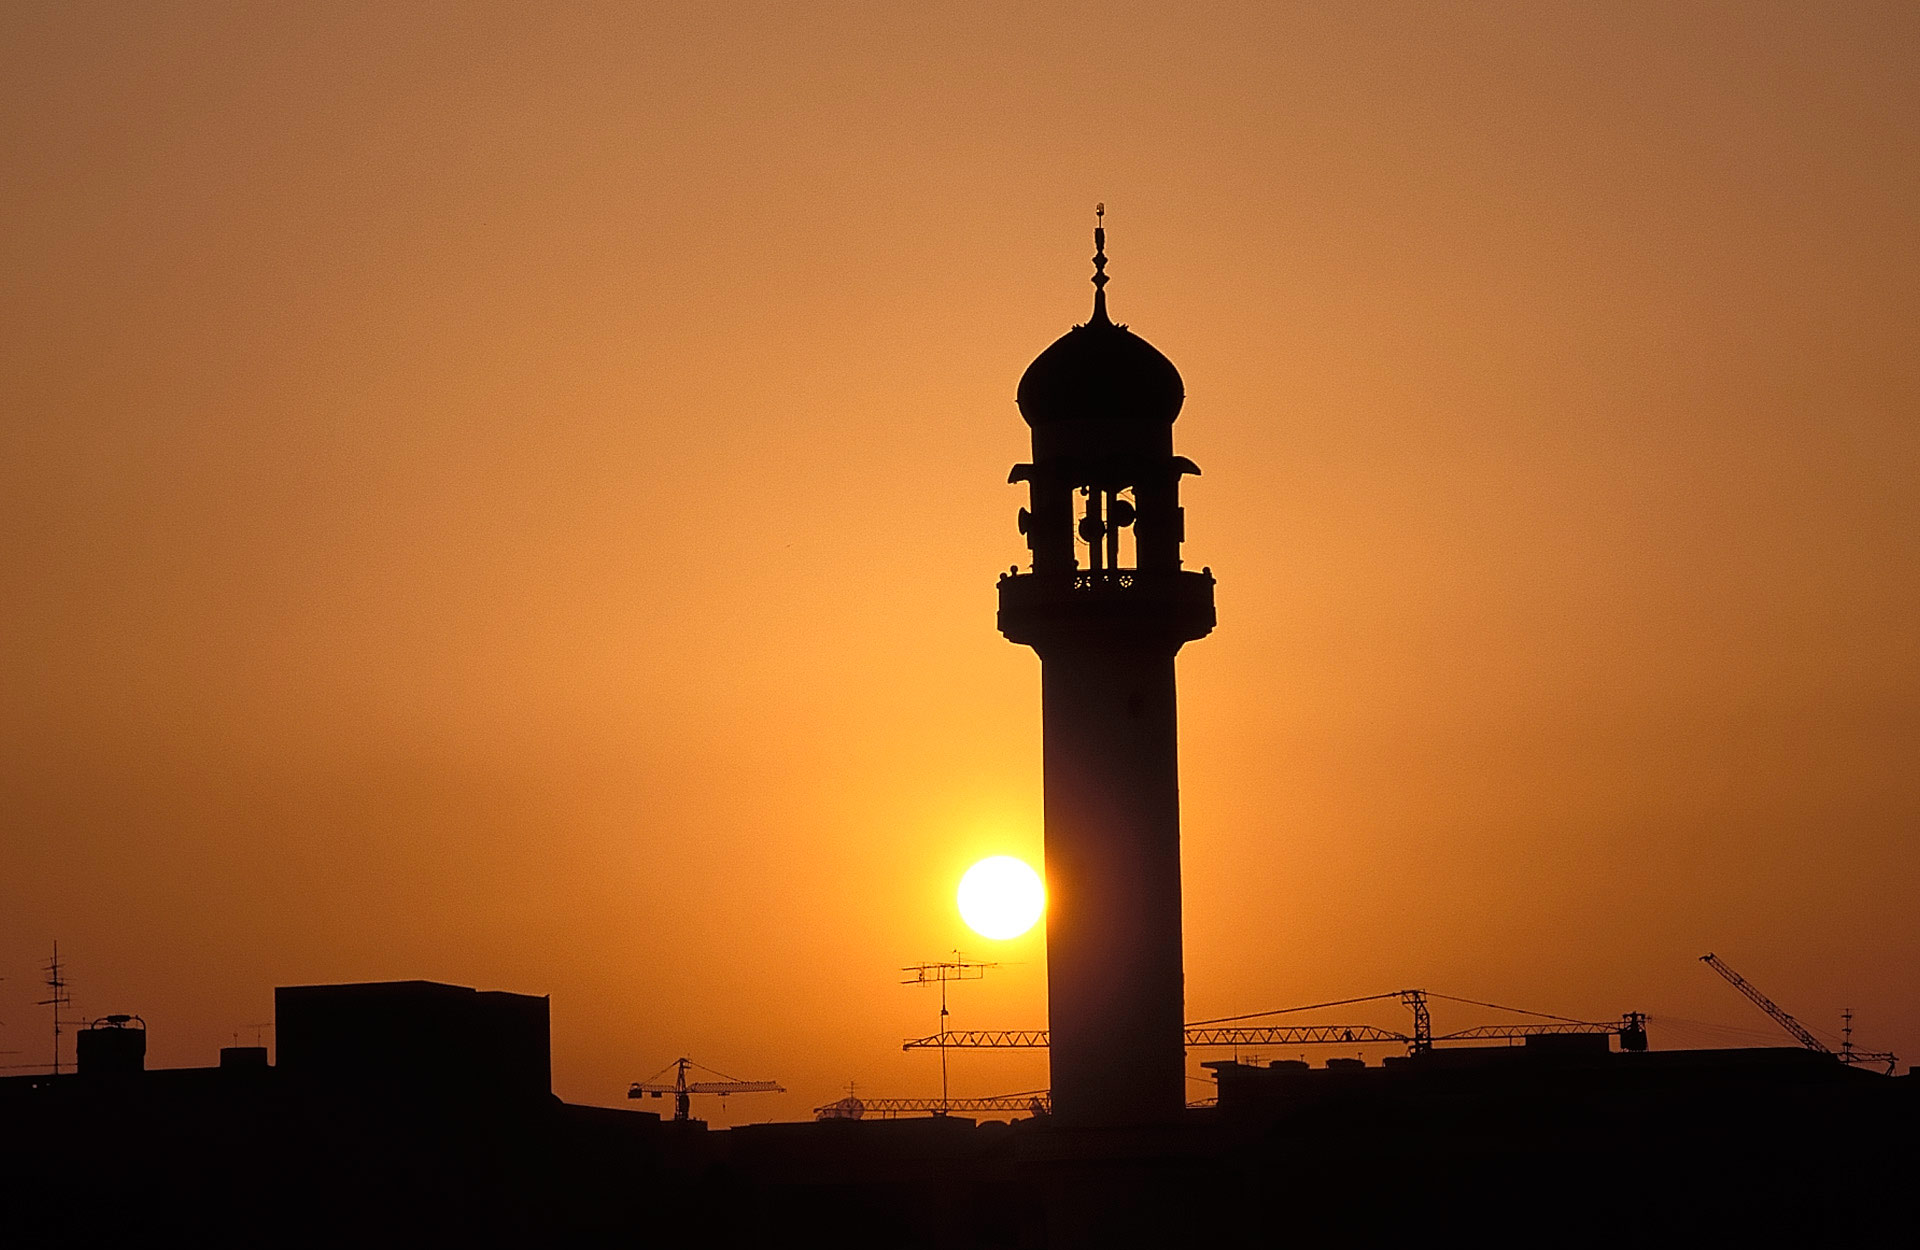 Minaret of a mosque at sunset, Dubai, United Arab Emirates